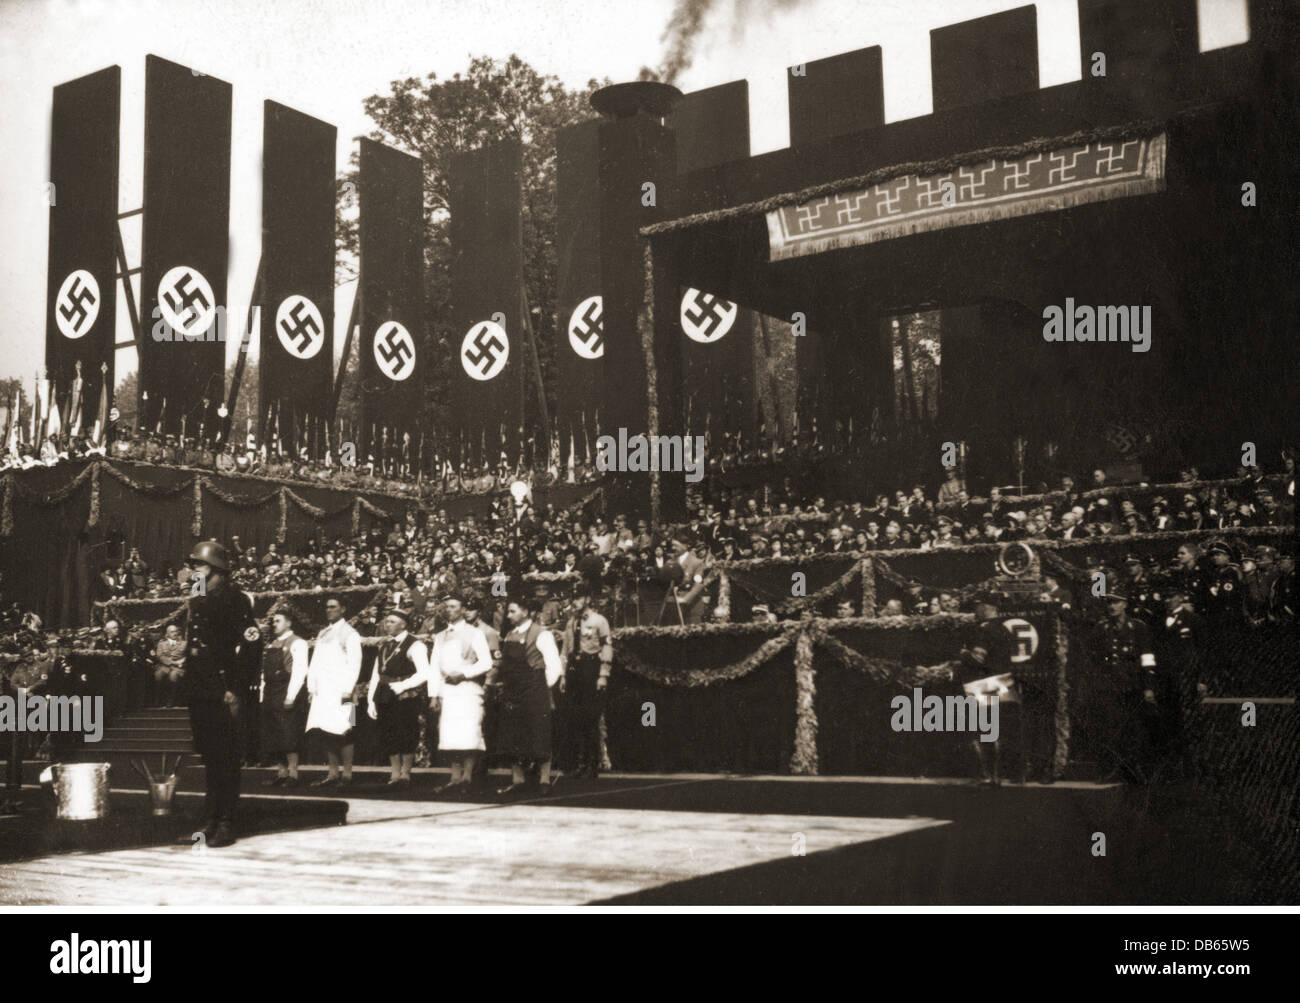 National-socialisme, architecture, 'Haus der Deutschen Kunst', Munich, posant la pierre angulaire, 15.10.1933, discours du chancelier de Reich Adolf Hitler, , droits additionnels-Clearences-non disponible Banque D'Images